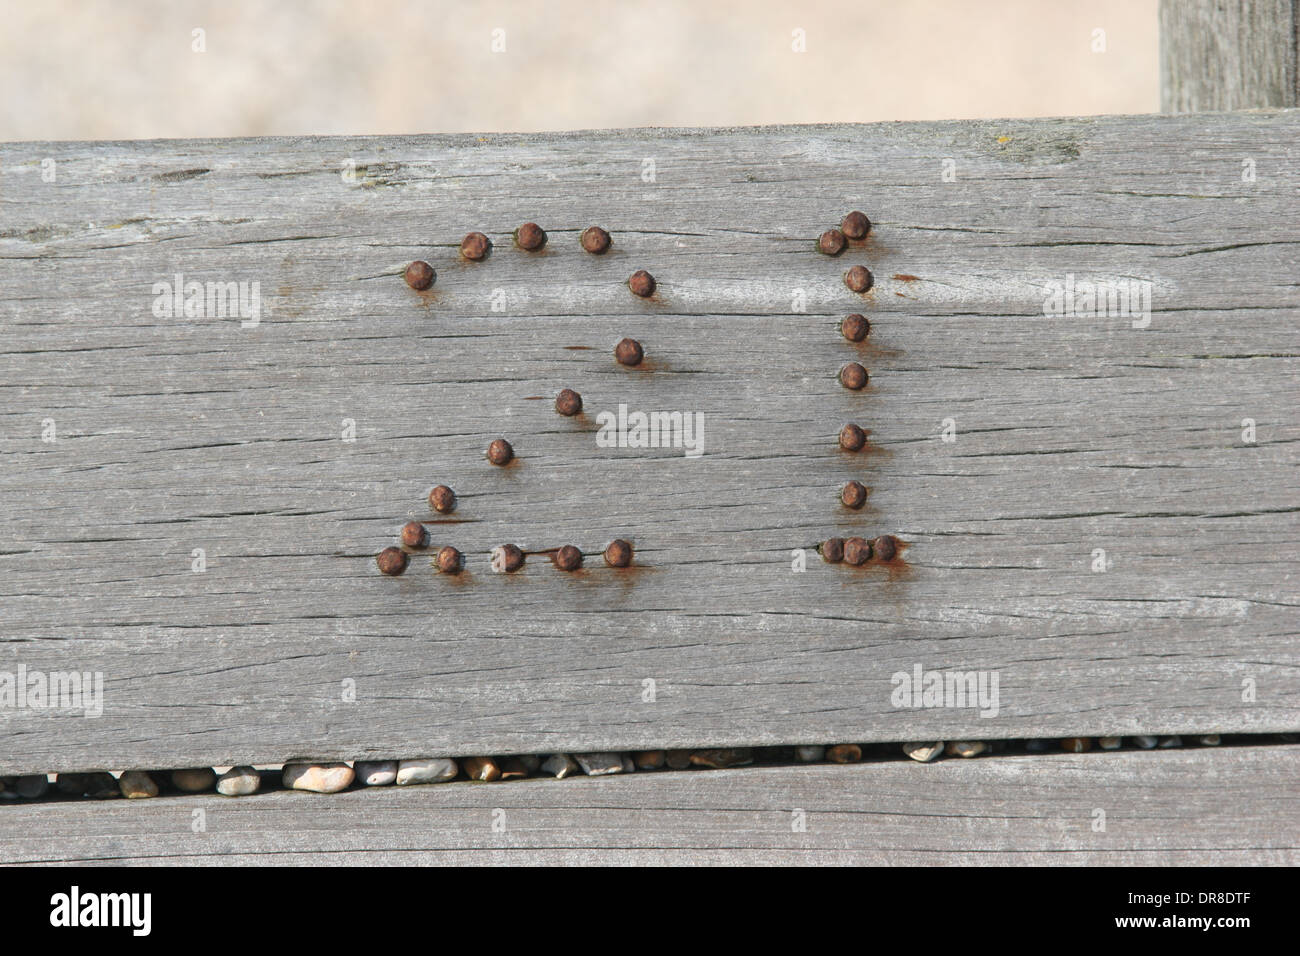 Nummer 21 in Rusty Nails nagelt in Holzbruchwasser in Winchelsea Beach, East Sussex, Großbritannien Stockfoto